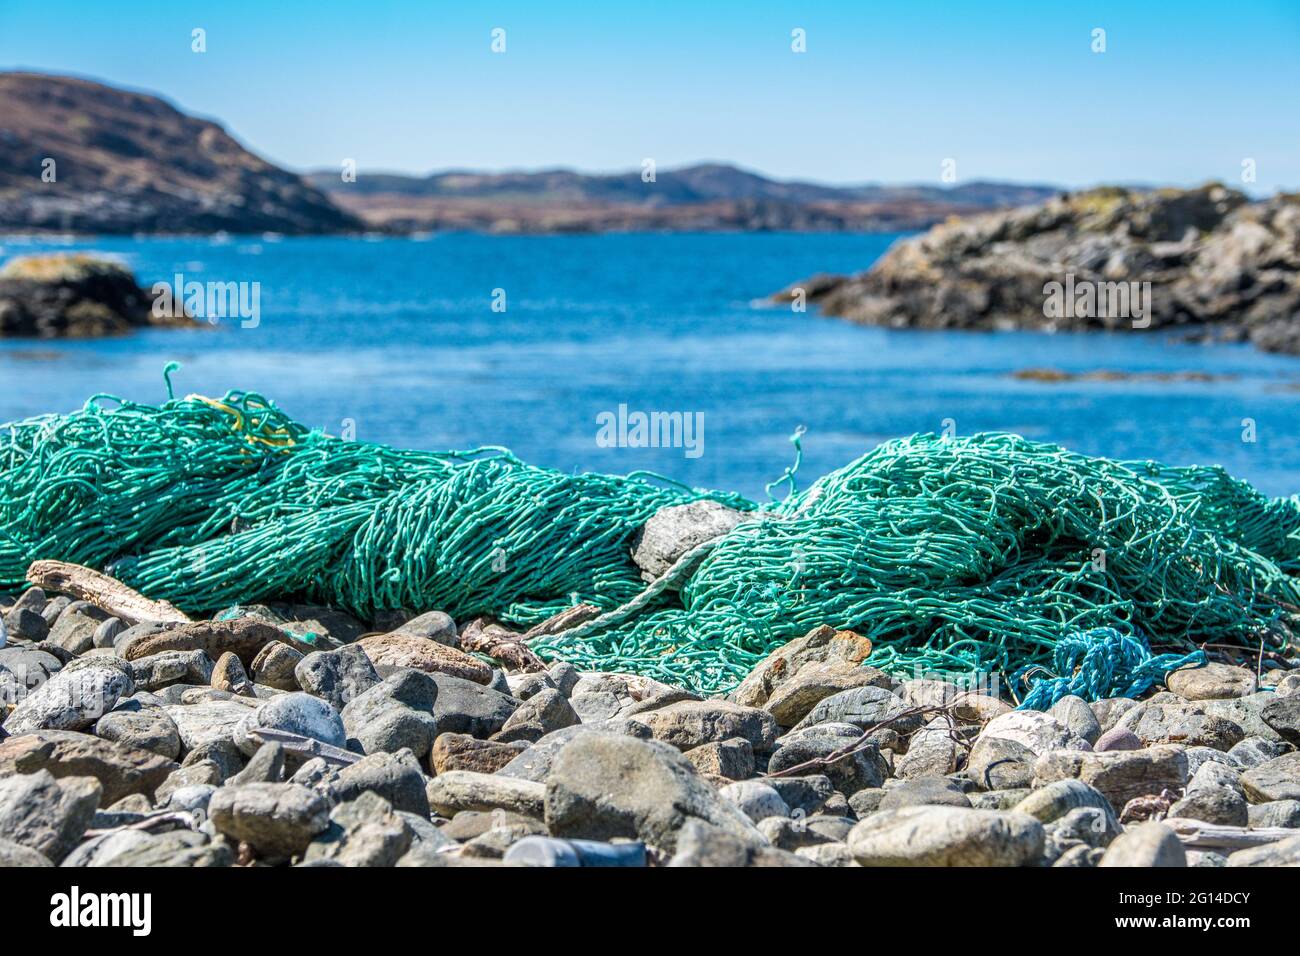 Las redes de pesca abandonadas, uno de los problemas más graves